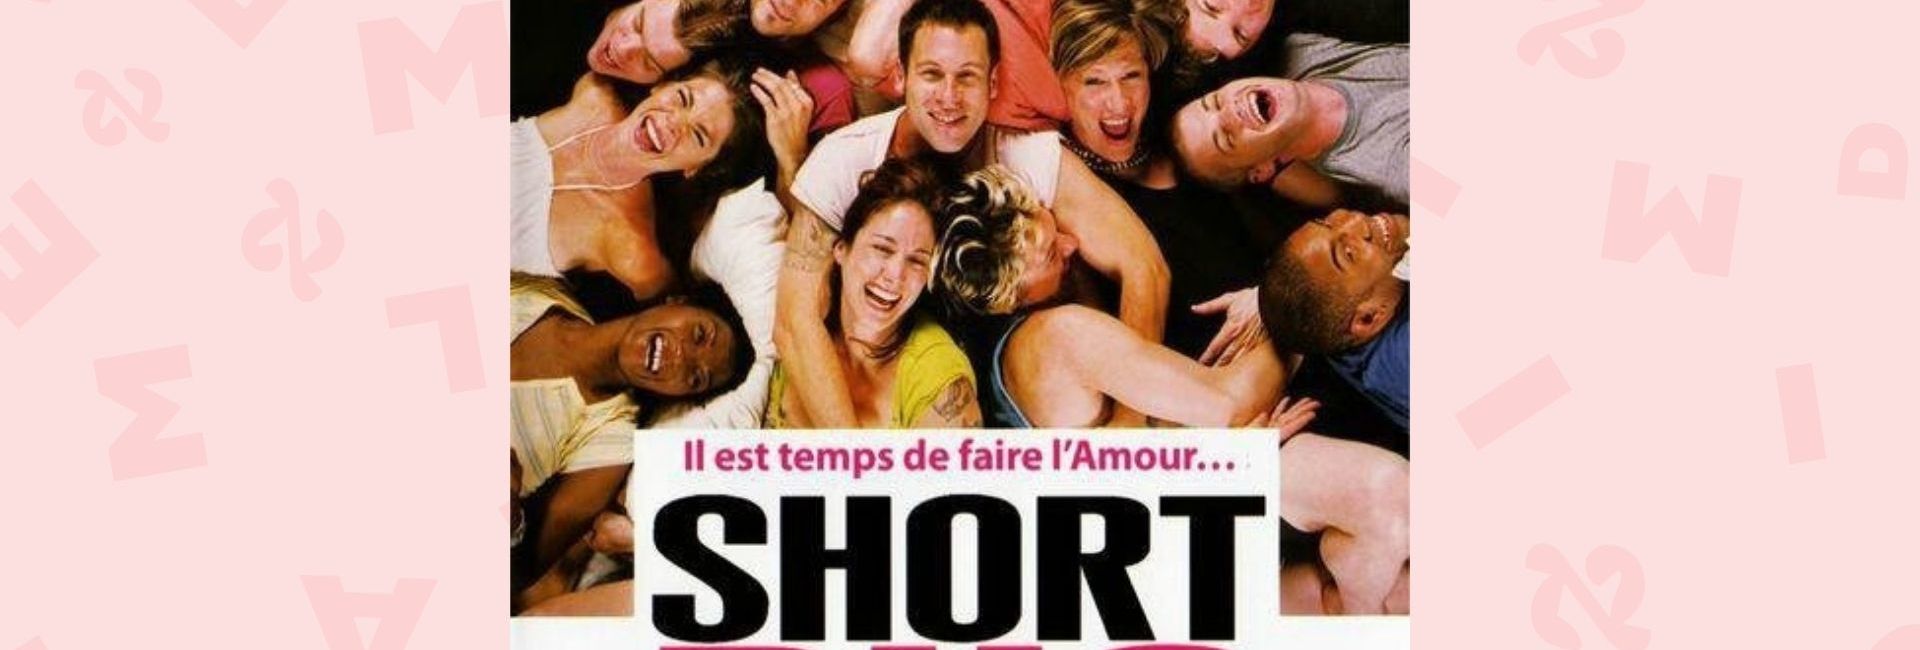 L'affiche française du film Shortbus, réalisé par John Cameron Mitchell